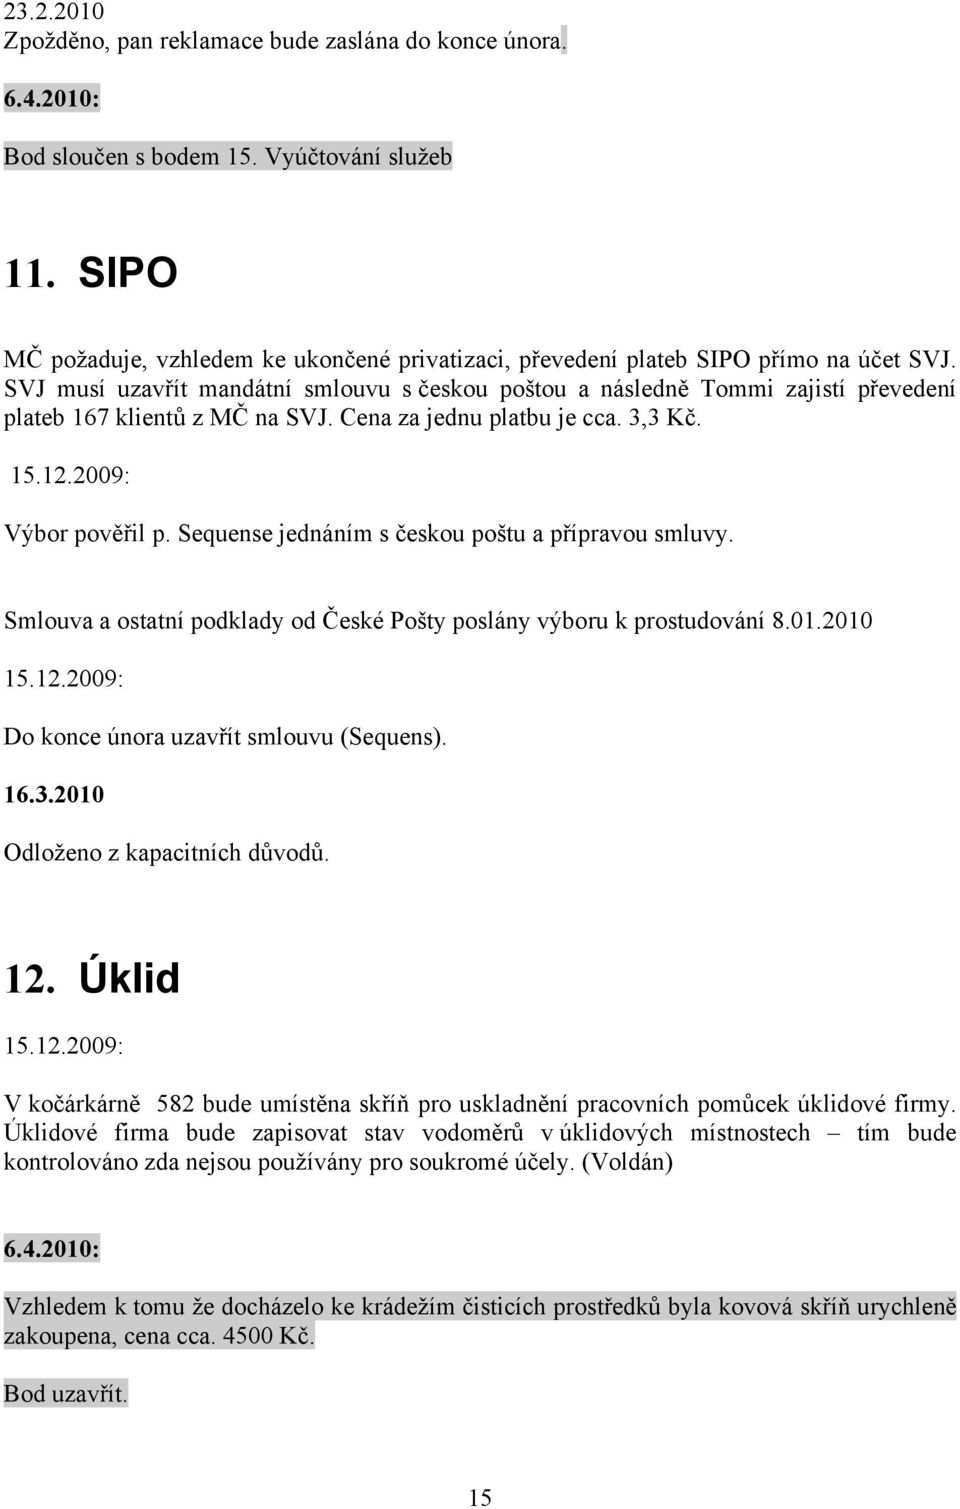 SVJ musí uzavřít mandátní smlouvu s českou poštou a následně Tommi zajistí převedení plateb 167 klientů z MČ na SVJ. Cena za jednu platbu je cca. 3,3 Kč. 15.12.2009: Výbor pověřil p.